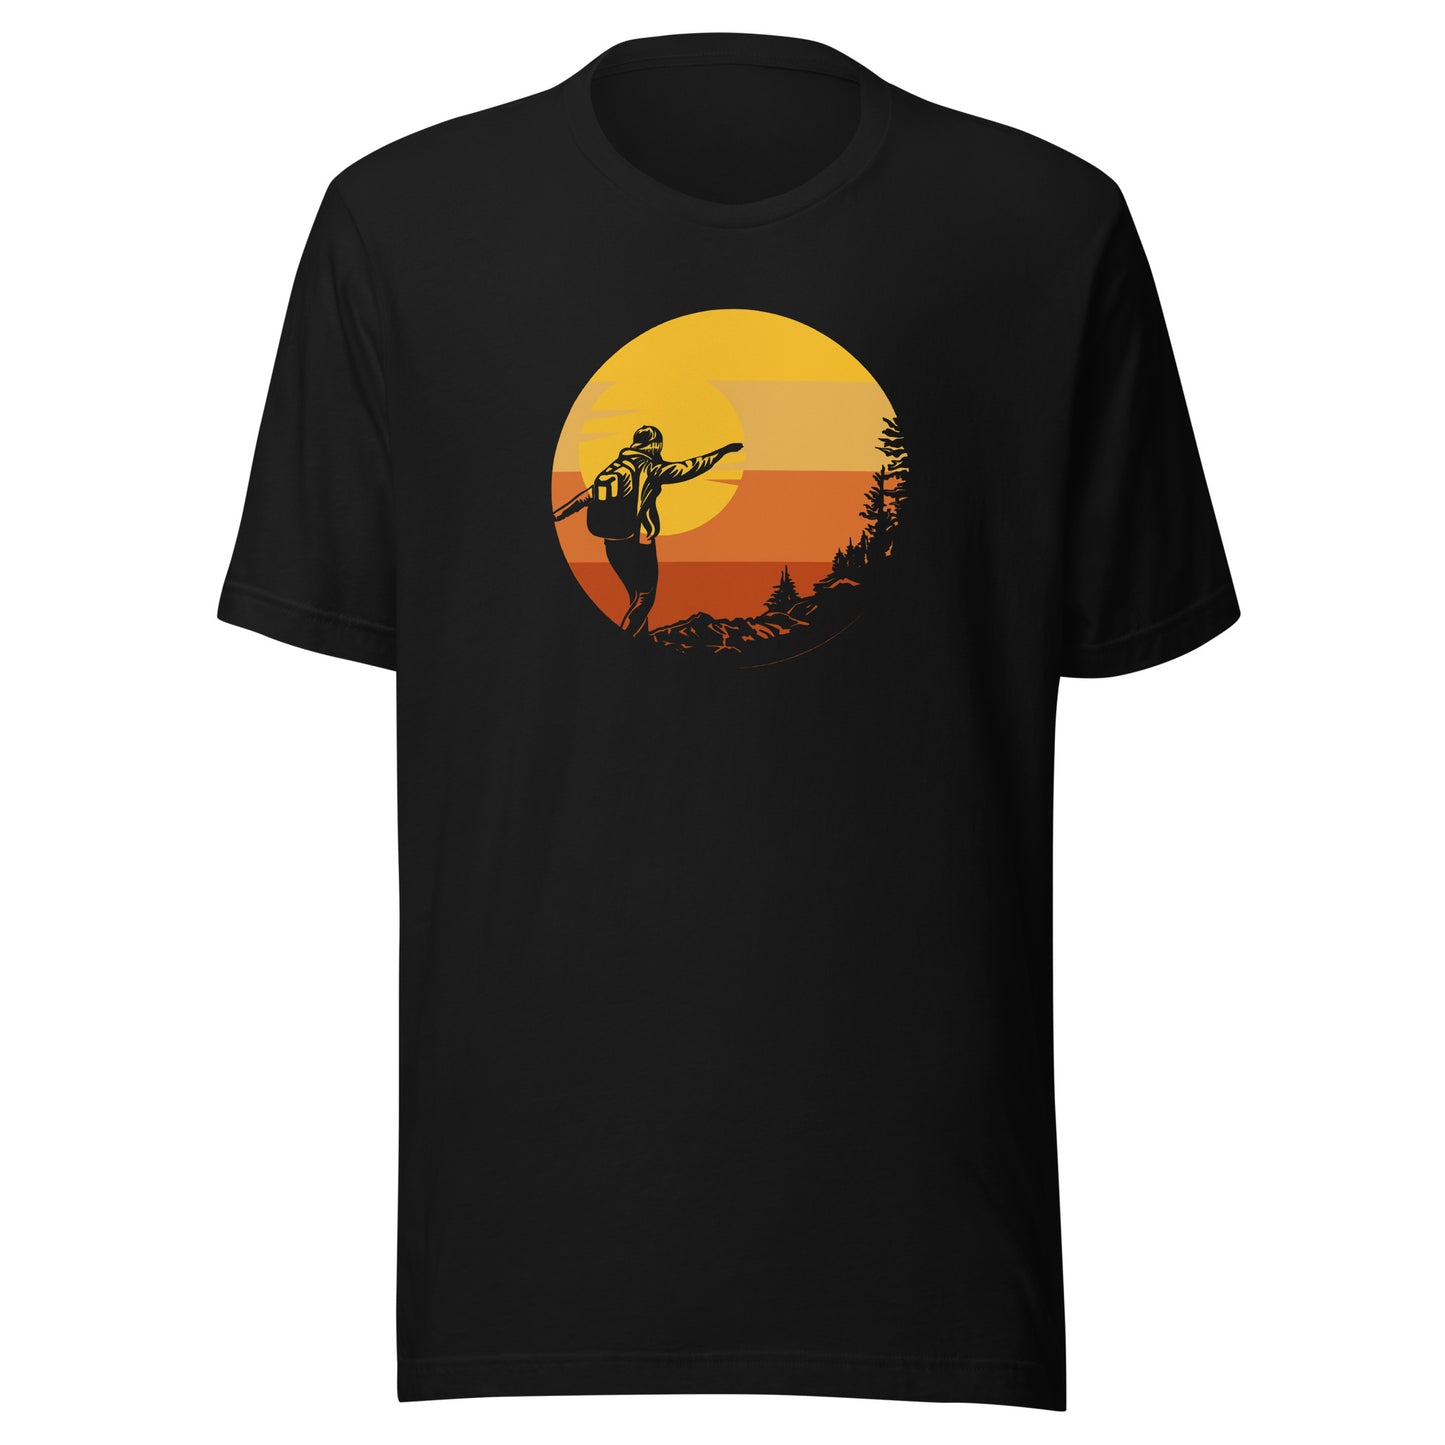 Unisex t-shirt 'Hiking vibes'